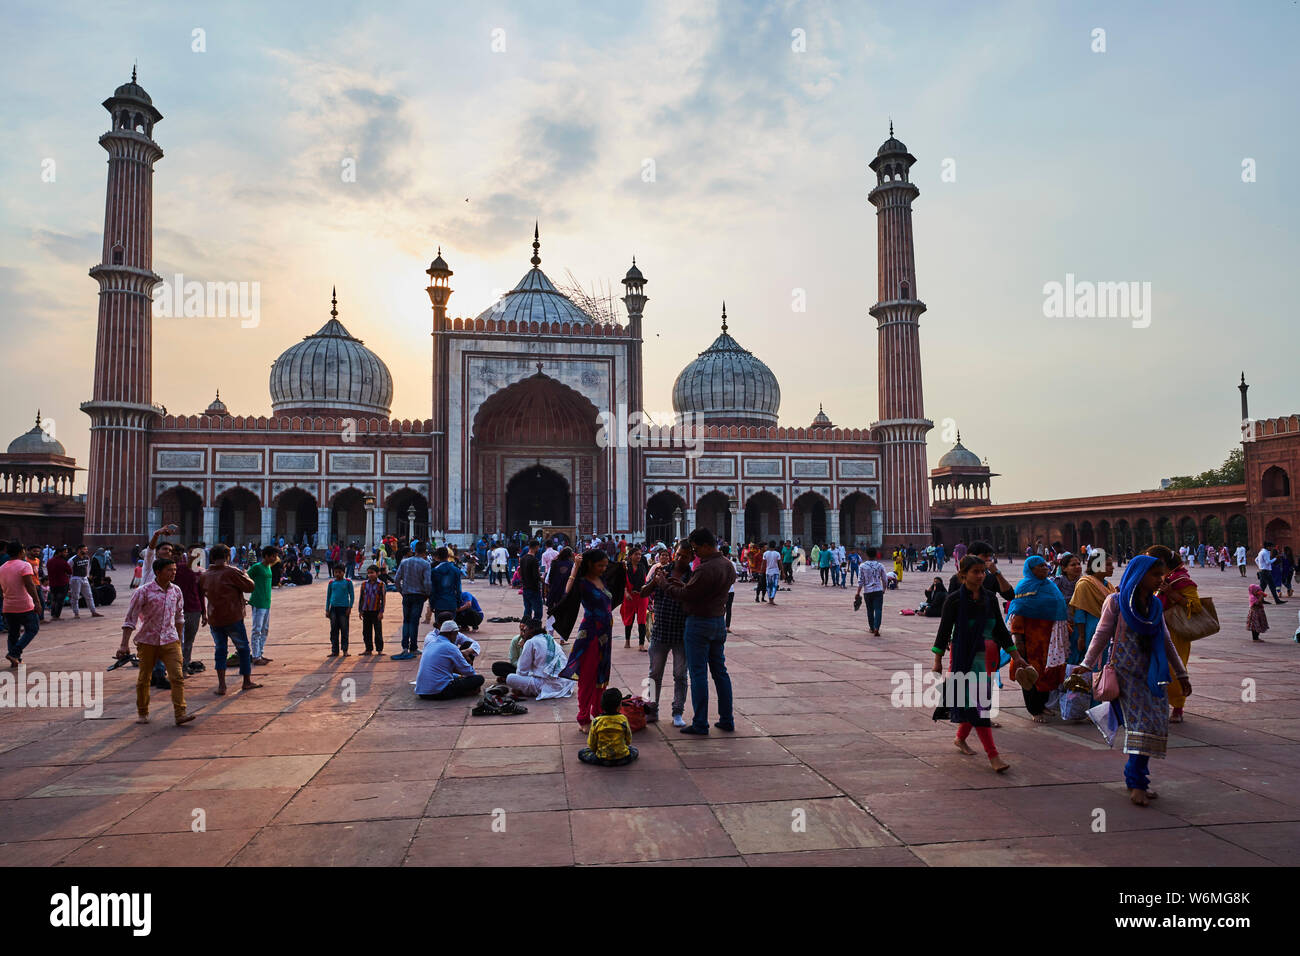 L'Inde, Delhi, Old Delhi, la mosquée Jama Masjid construit par Shah Jahan, l'empereur moghol Banque D'Images